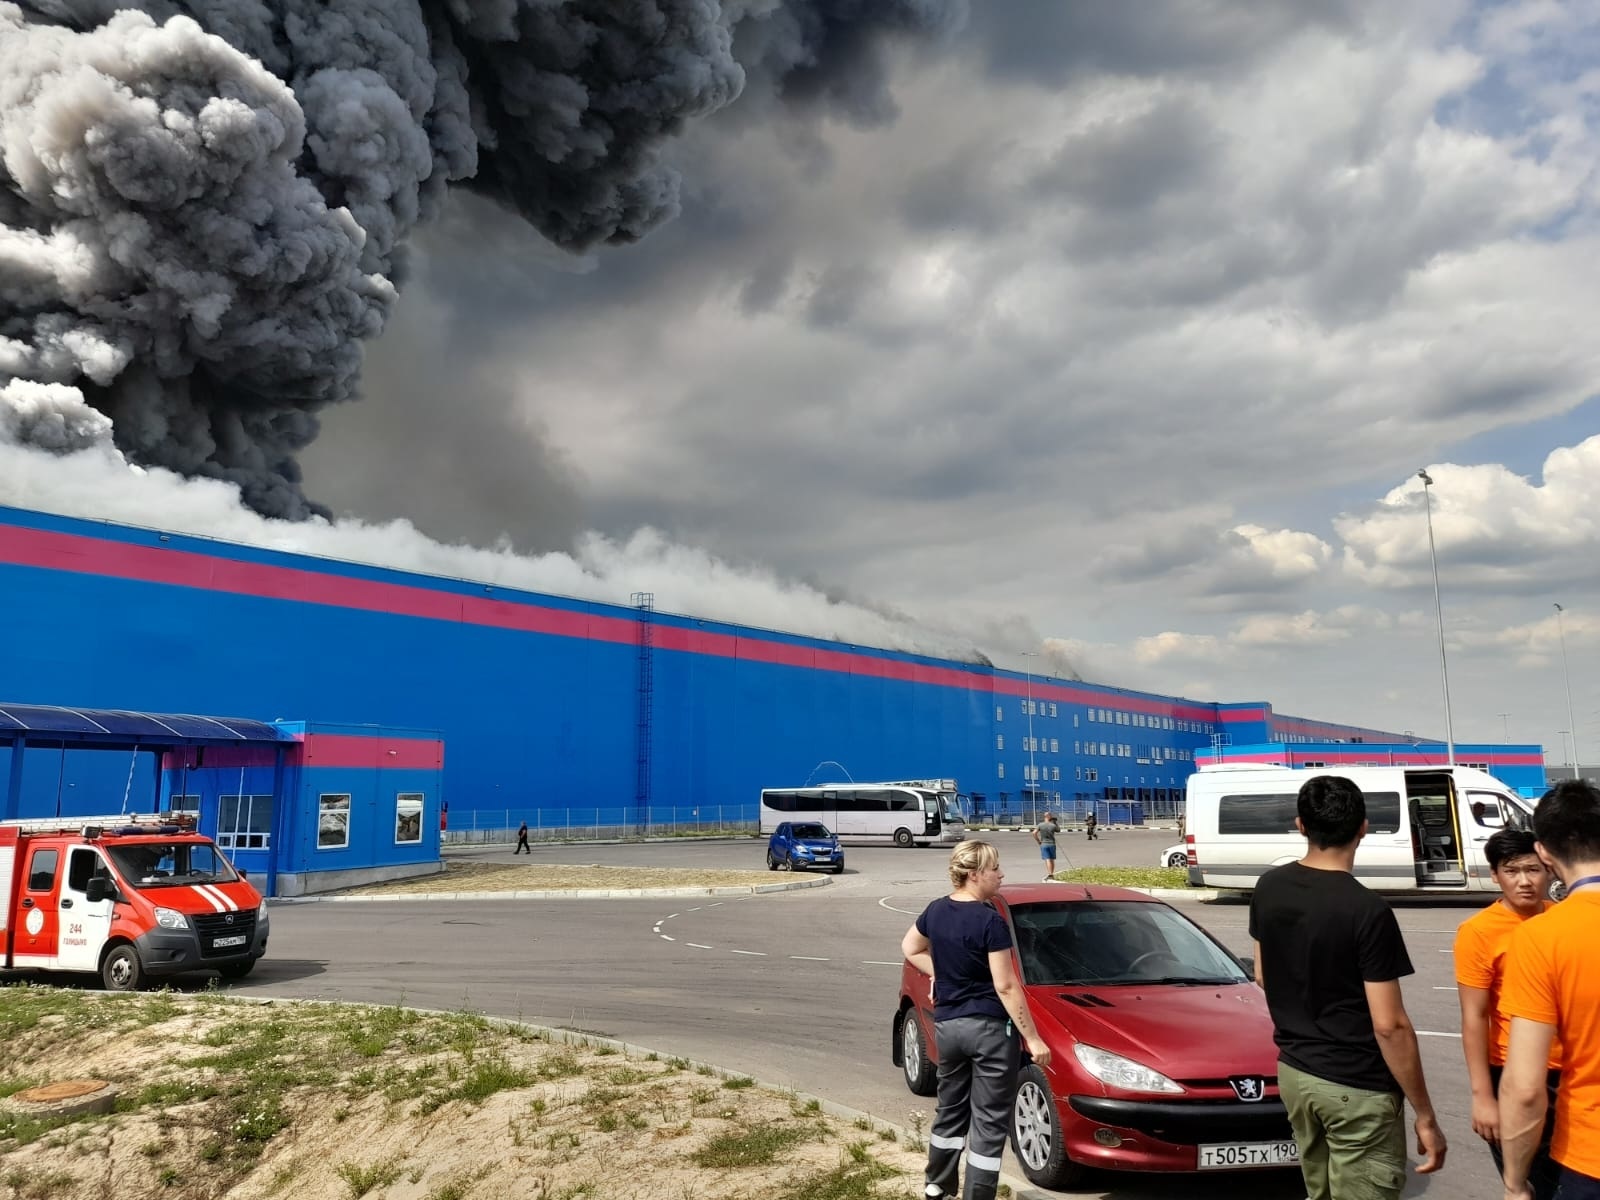 Площадь пожара на складе Ozon в Подмосковье выросла до 50 тыс. кв.м